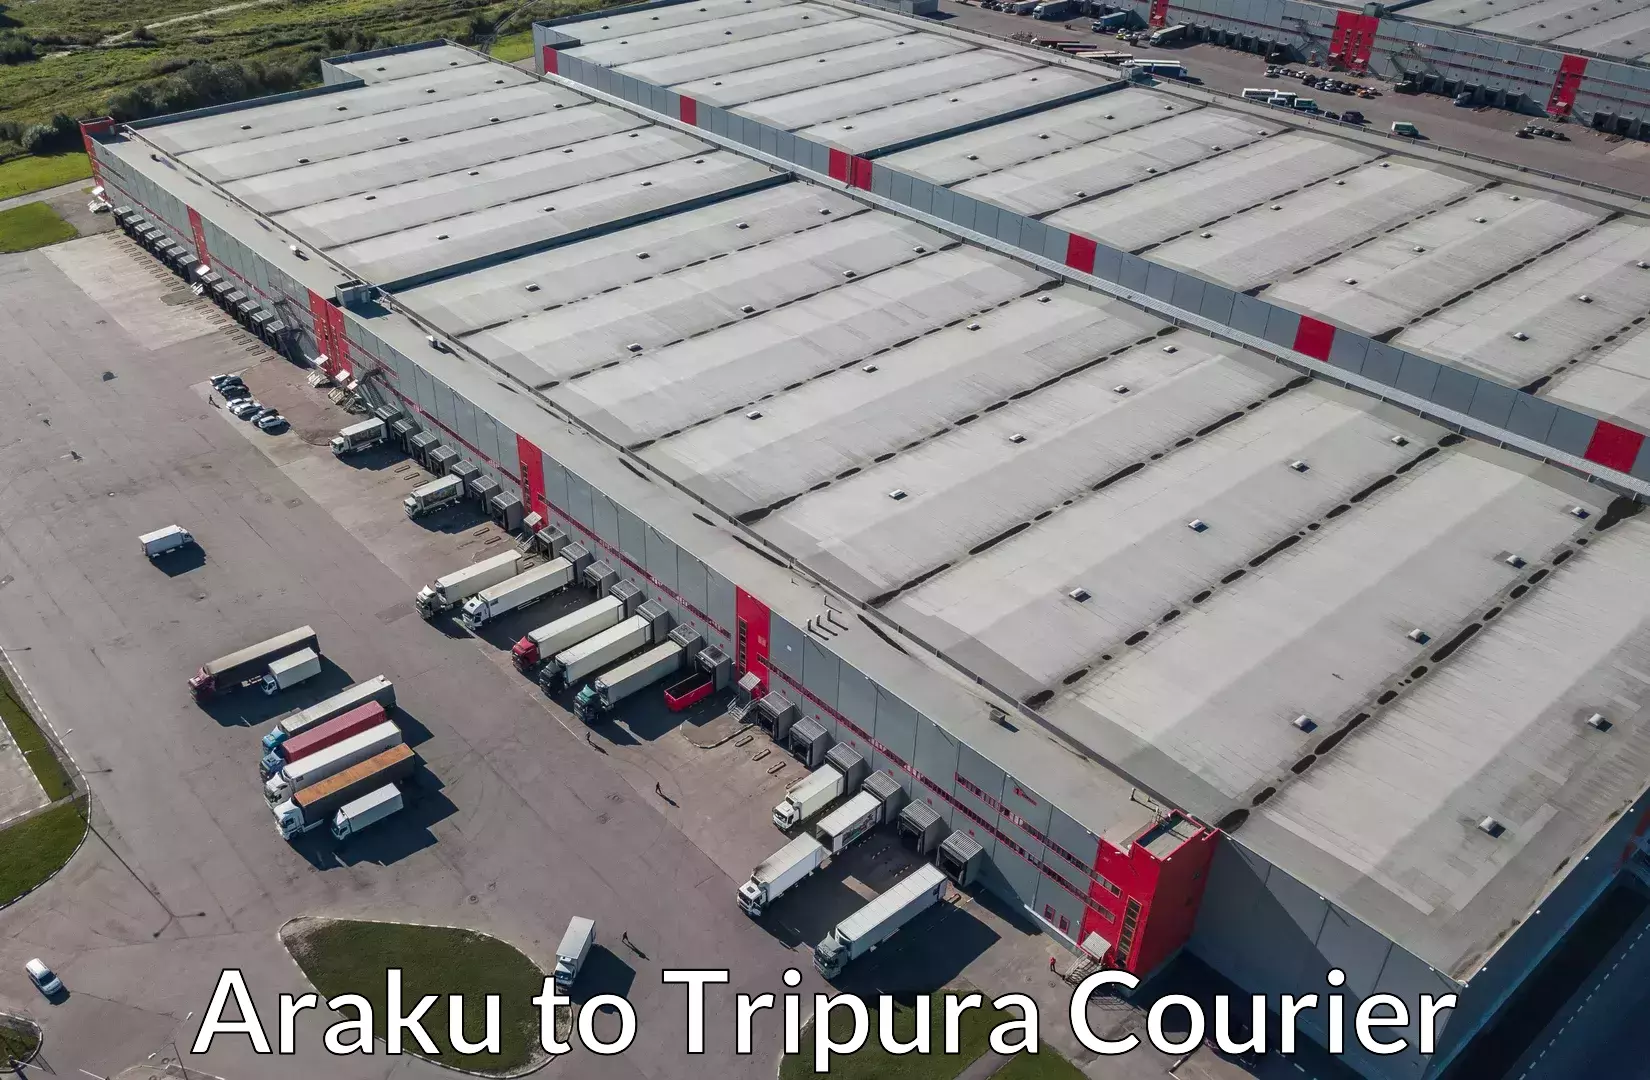 Furniture moving experts Araku to Udaipur Tripura